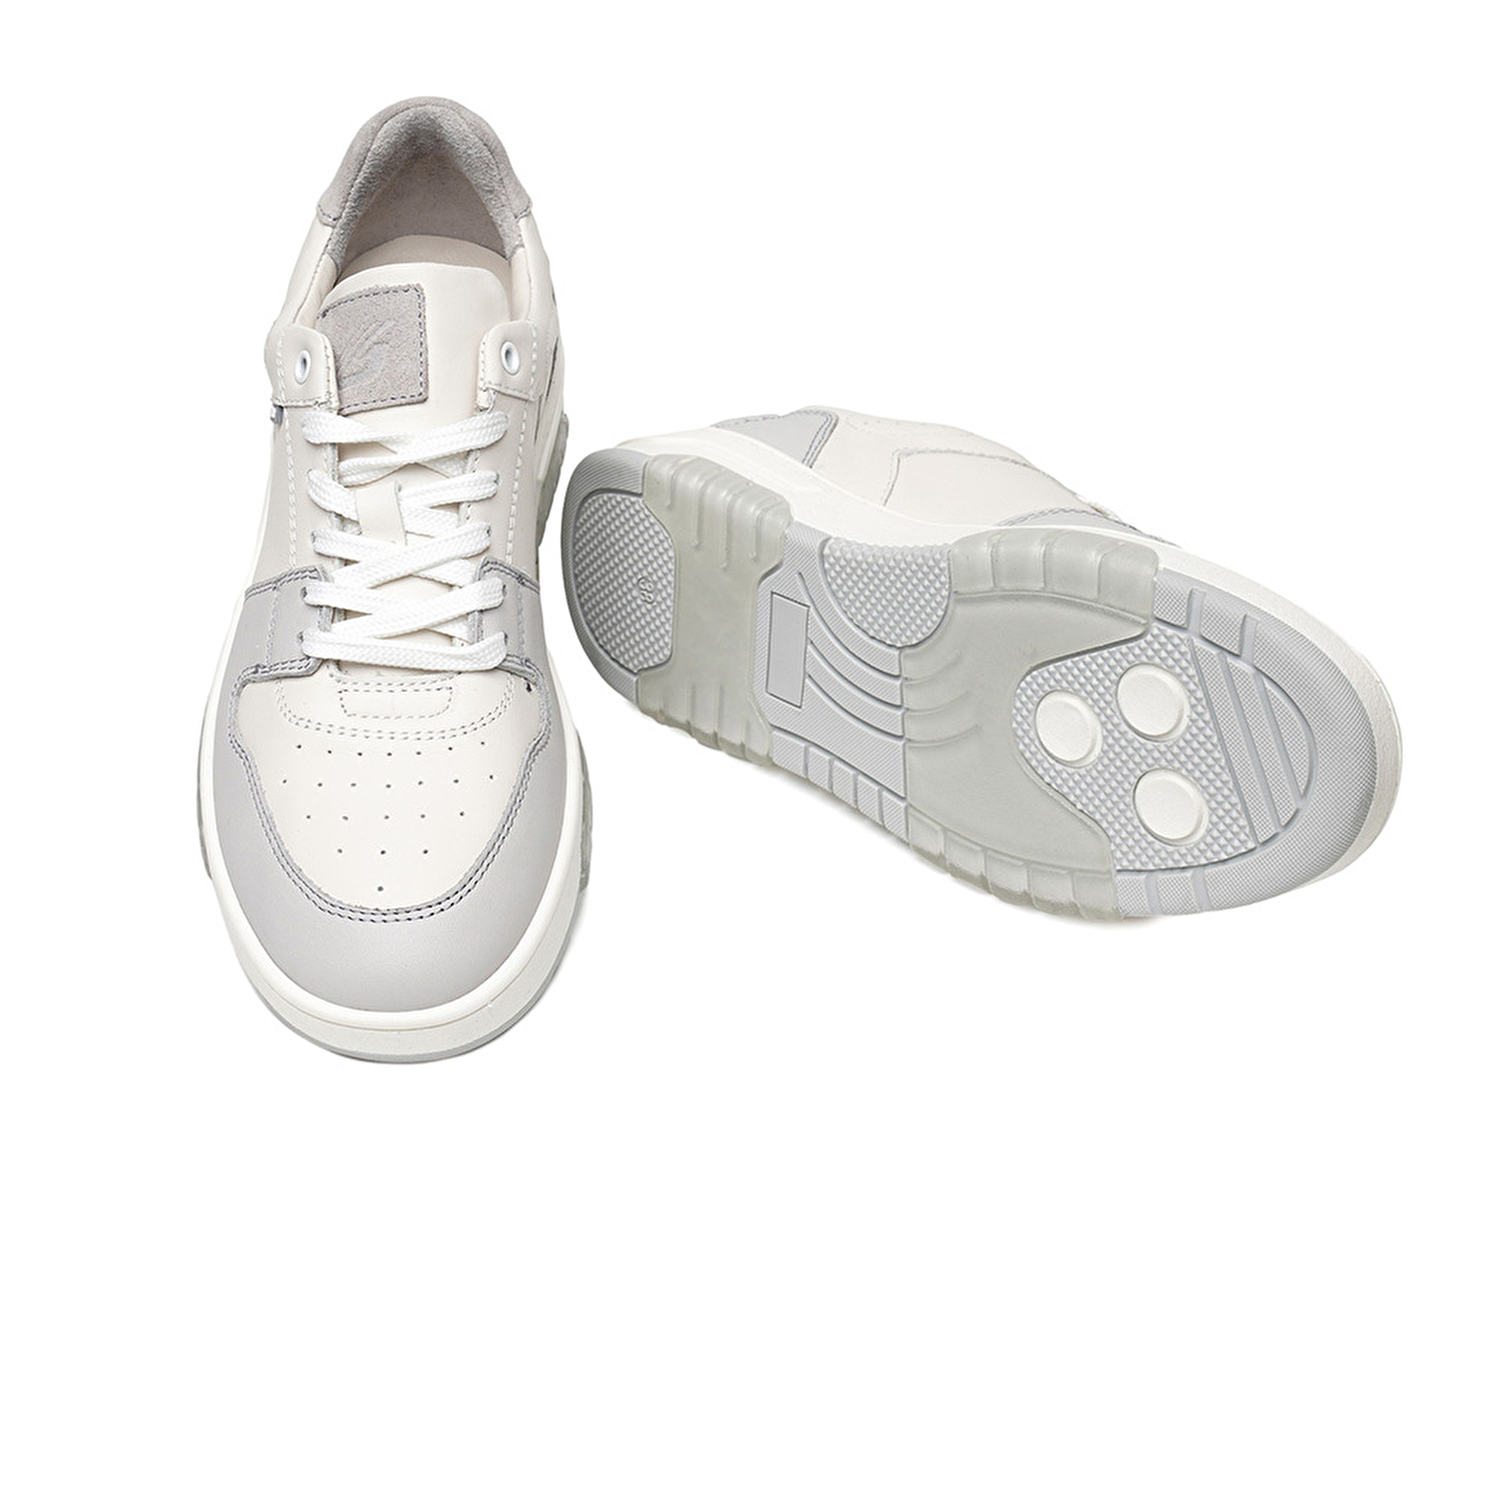 Kadın Beyaz Gri Hakiki Deri Sneaker Ayakkabı 3K2SA33021-6